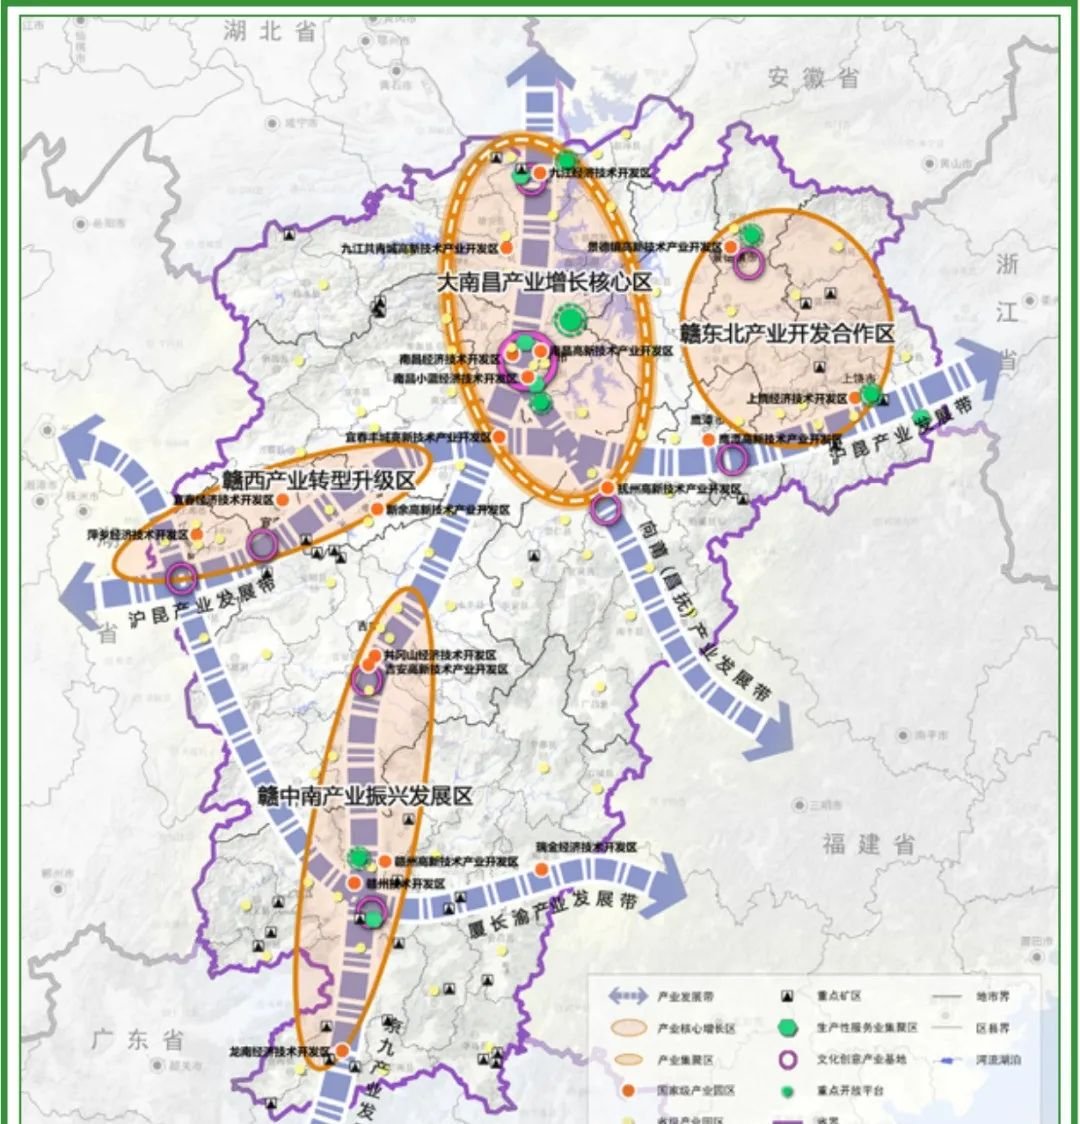 方舆 - 经济地理 - 上饶市城市总体规划（2016-2030） - Powered by phpwind